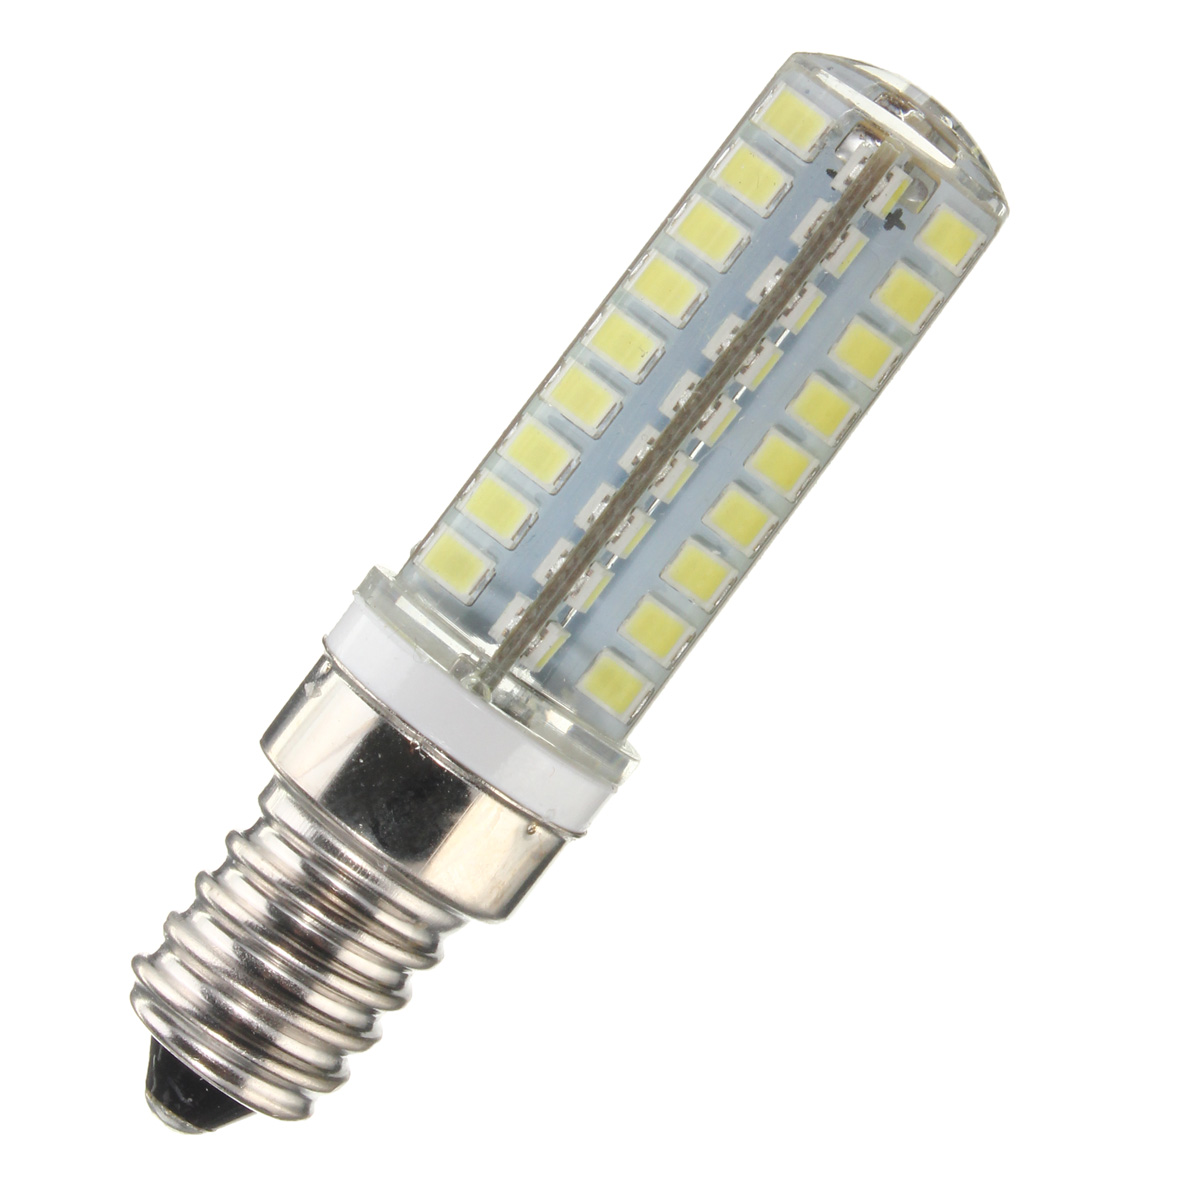 Dimmable-G9-E12-E14-B15-45W-72-SMD-2835-LED-Corn-Bulb-Household-Light-lamp-AC110V-1039655-7